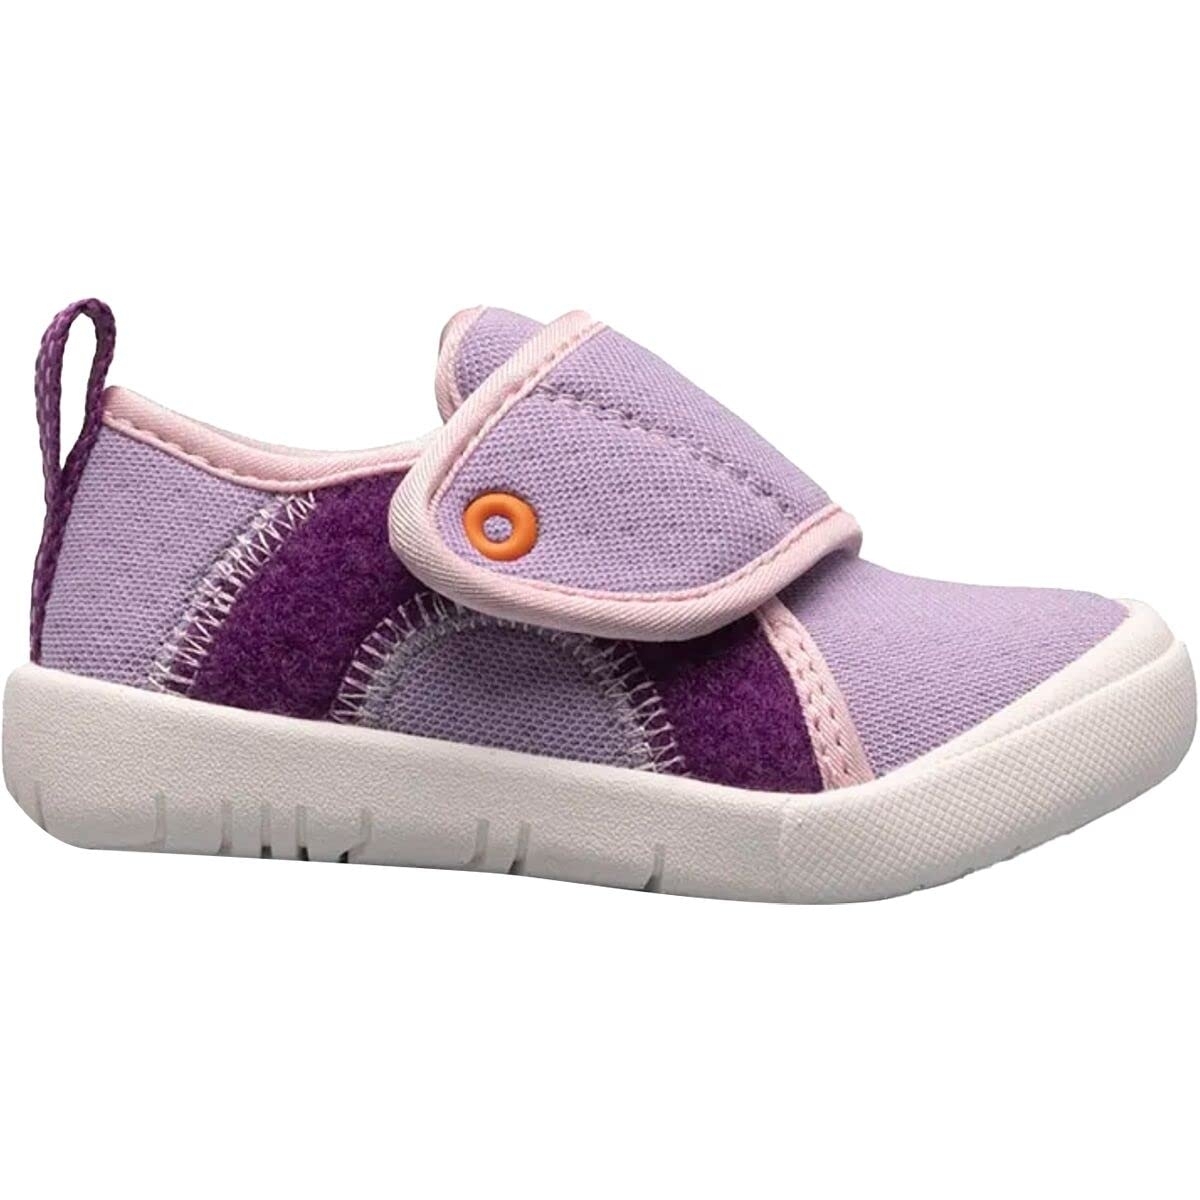 BOGS Unisex Baby Kicker Hook And Loop Shoe Sneaker Lavender Multi - 72811I-541 1 LAVENDER MULTI - LAVENDER MULTI, 4 Toddler